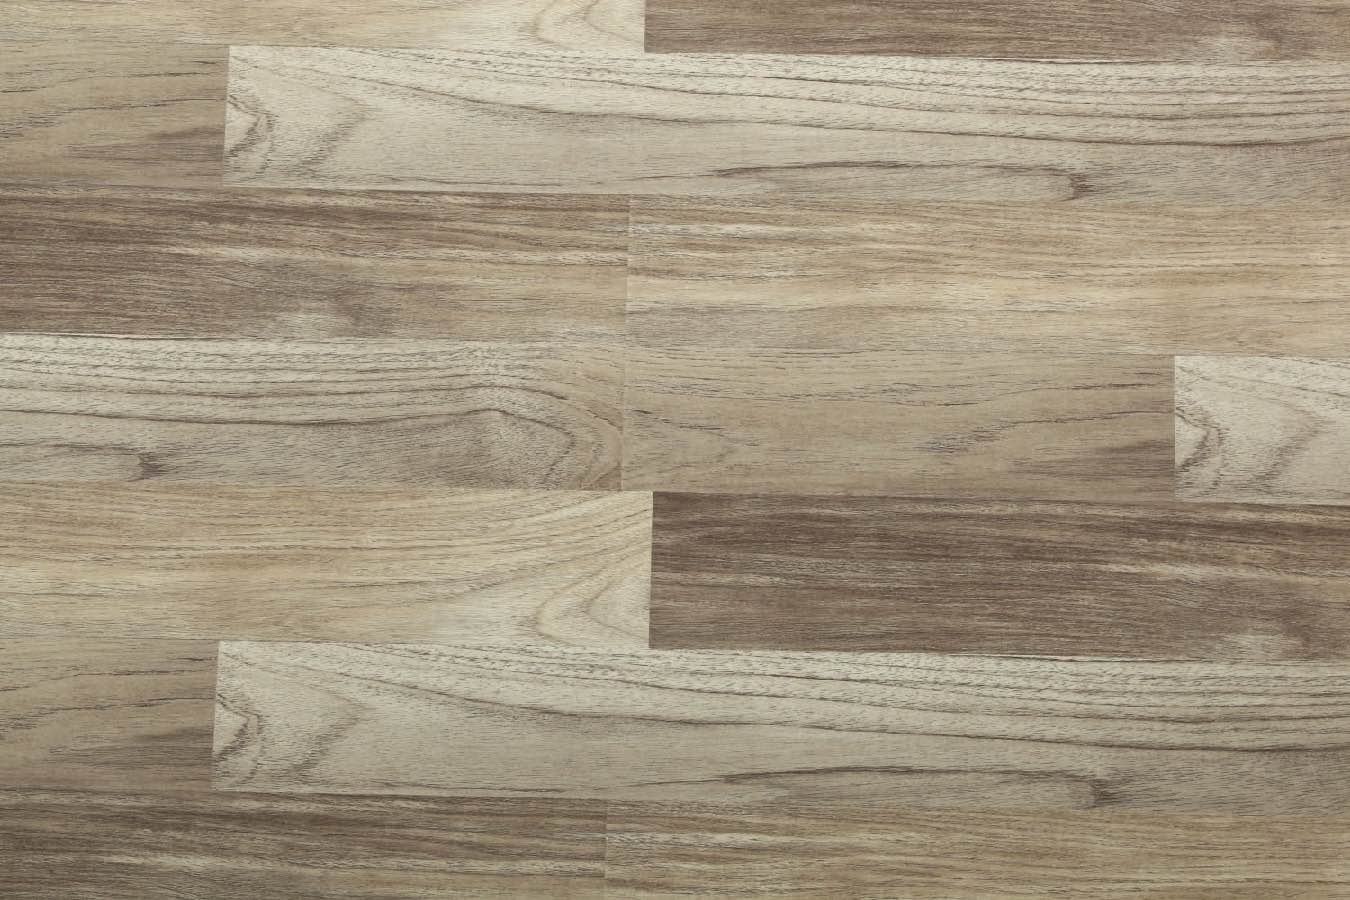 Oak Wood Laminate Flooring (LG624)